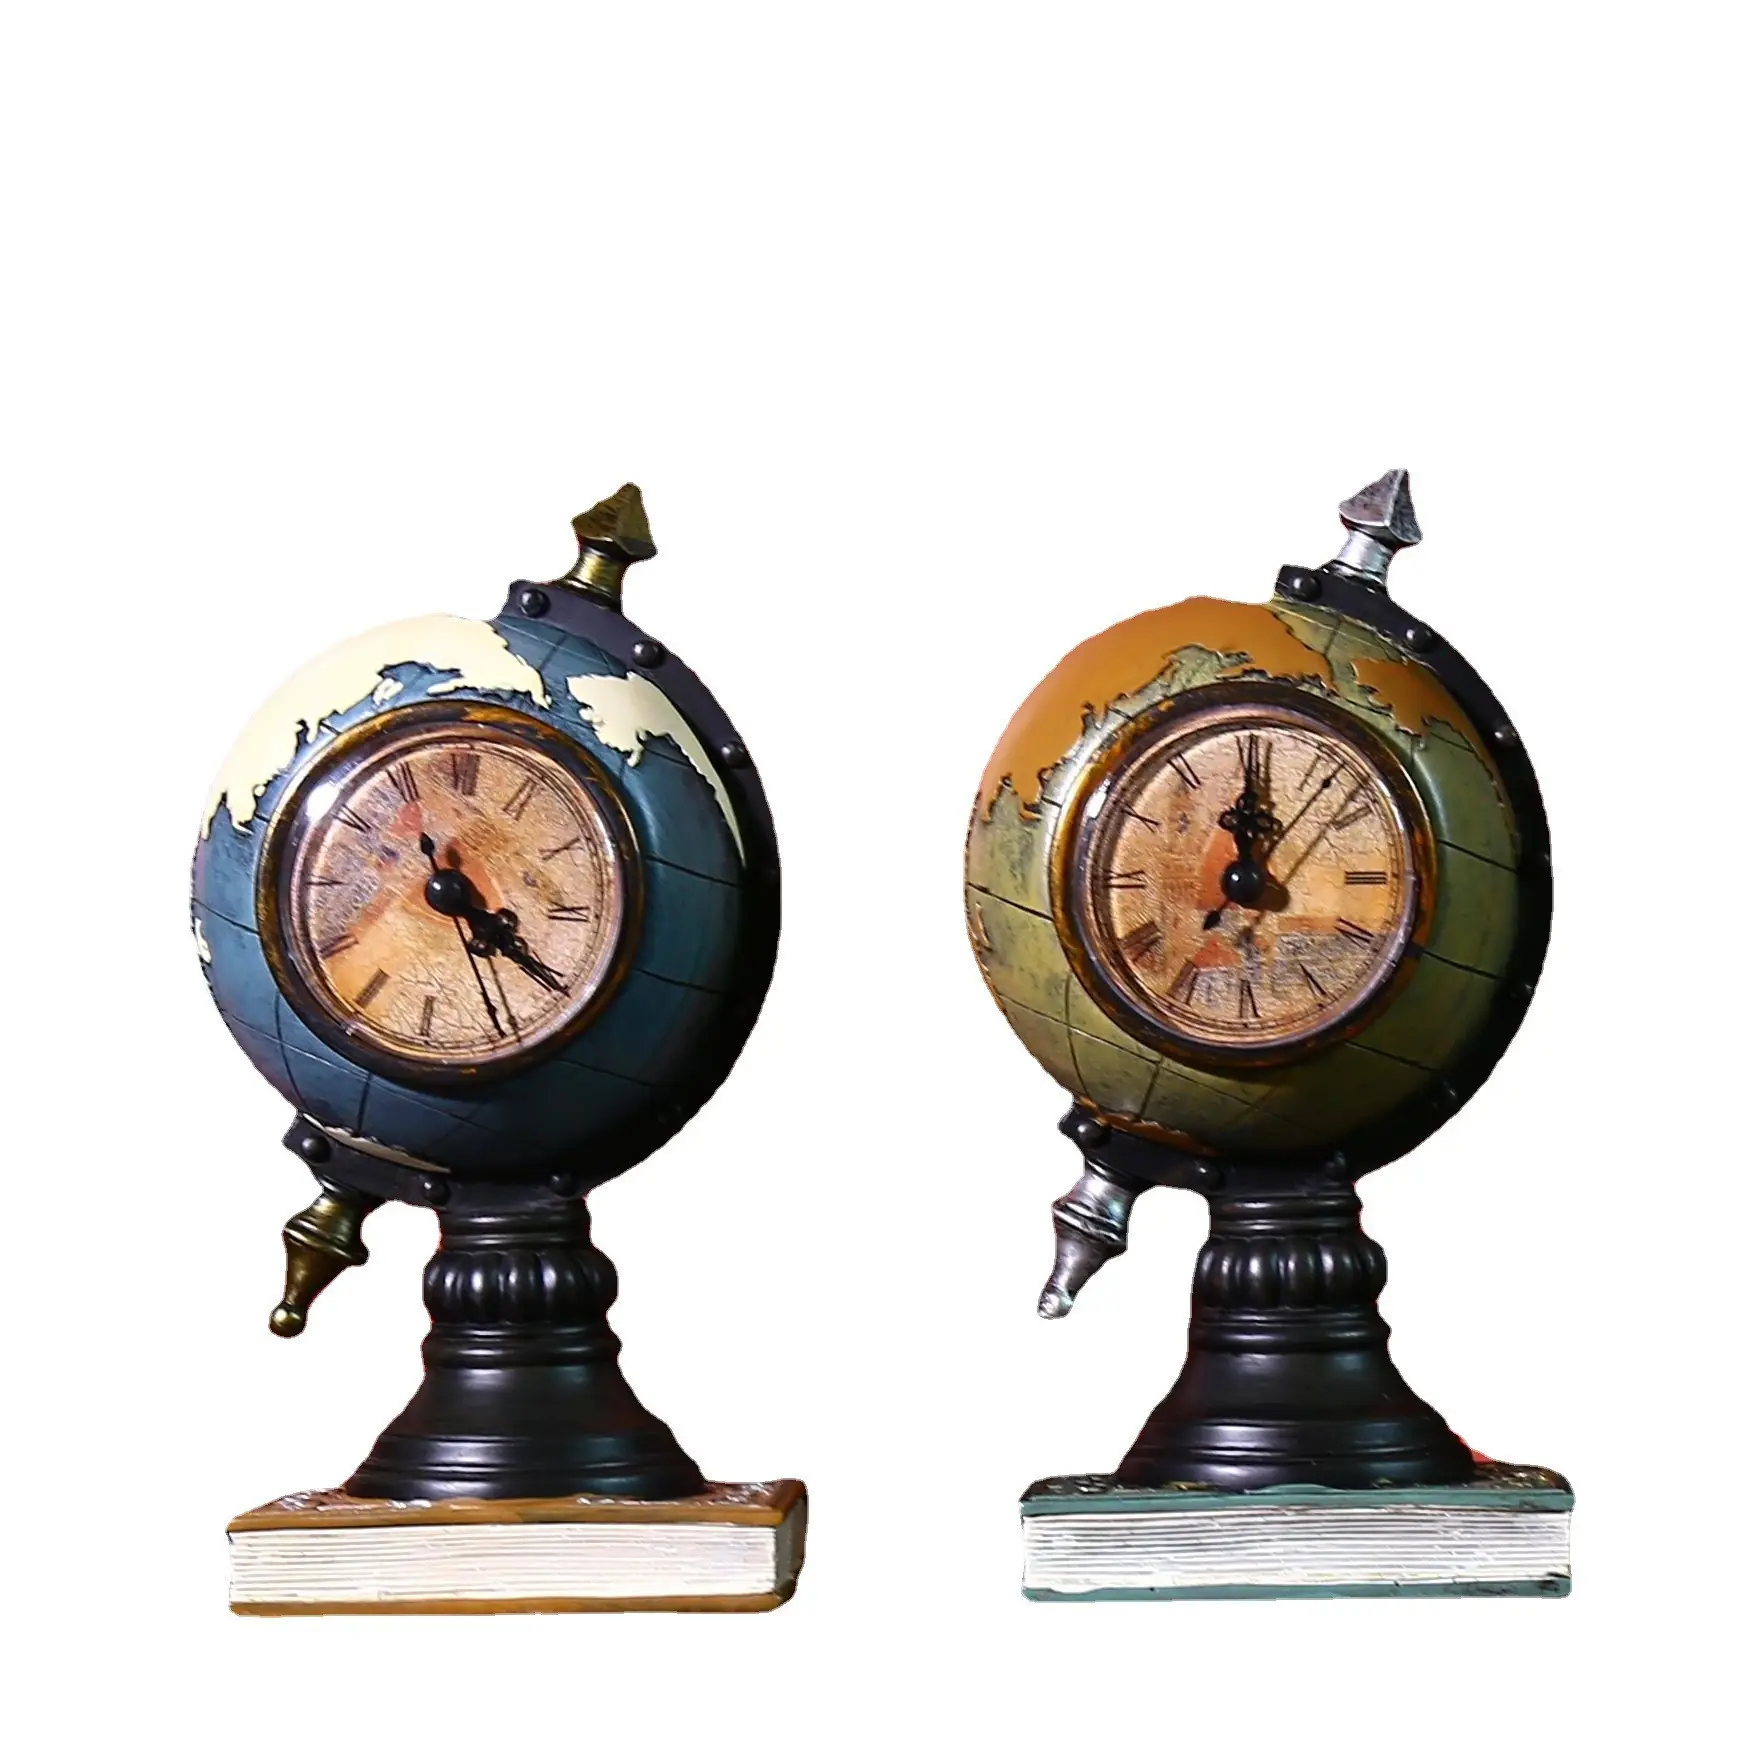 Orologio da tavolo Design orologio in metallo mappa del mondo retrò antico orologio da tavolo ornamento orologio